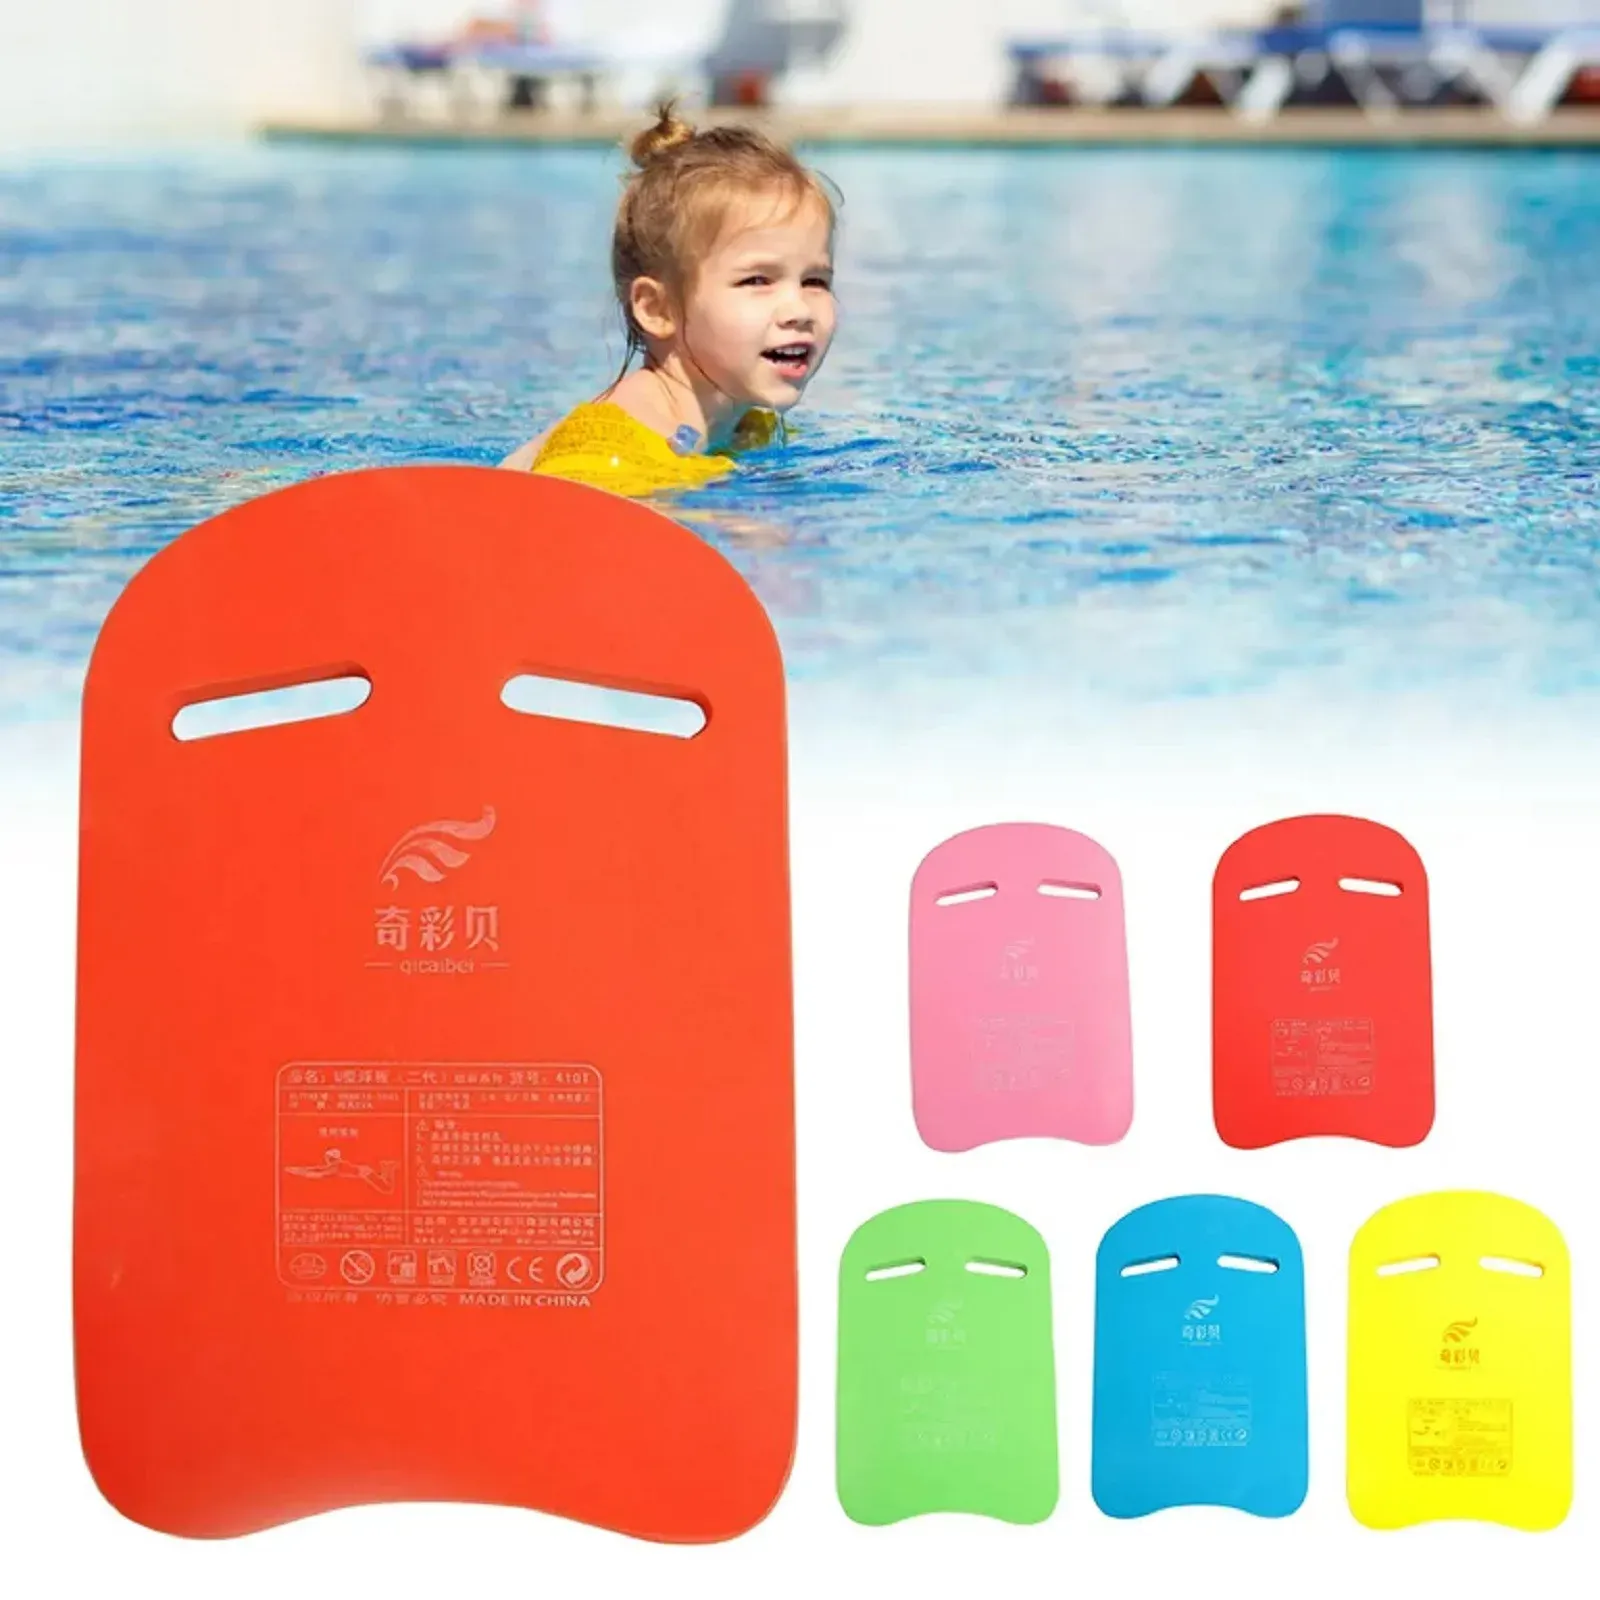 スイミングプール浮力キックボードエヴァフォーム子供向けの大人水泳トレーニングダイビングボードU字型キックボード